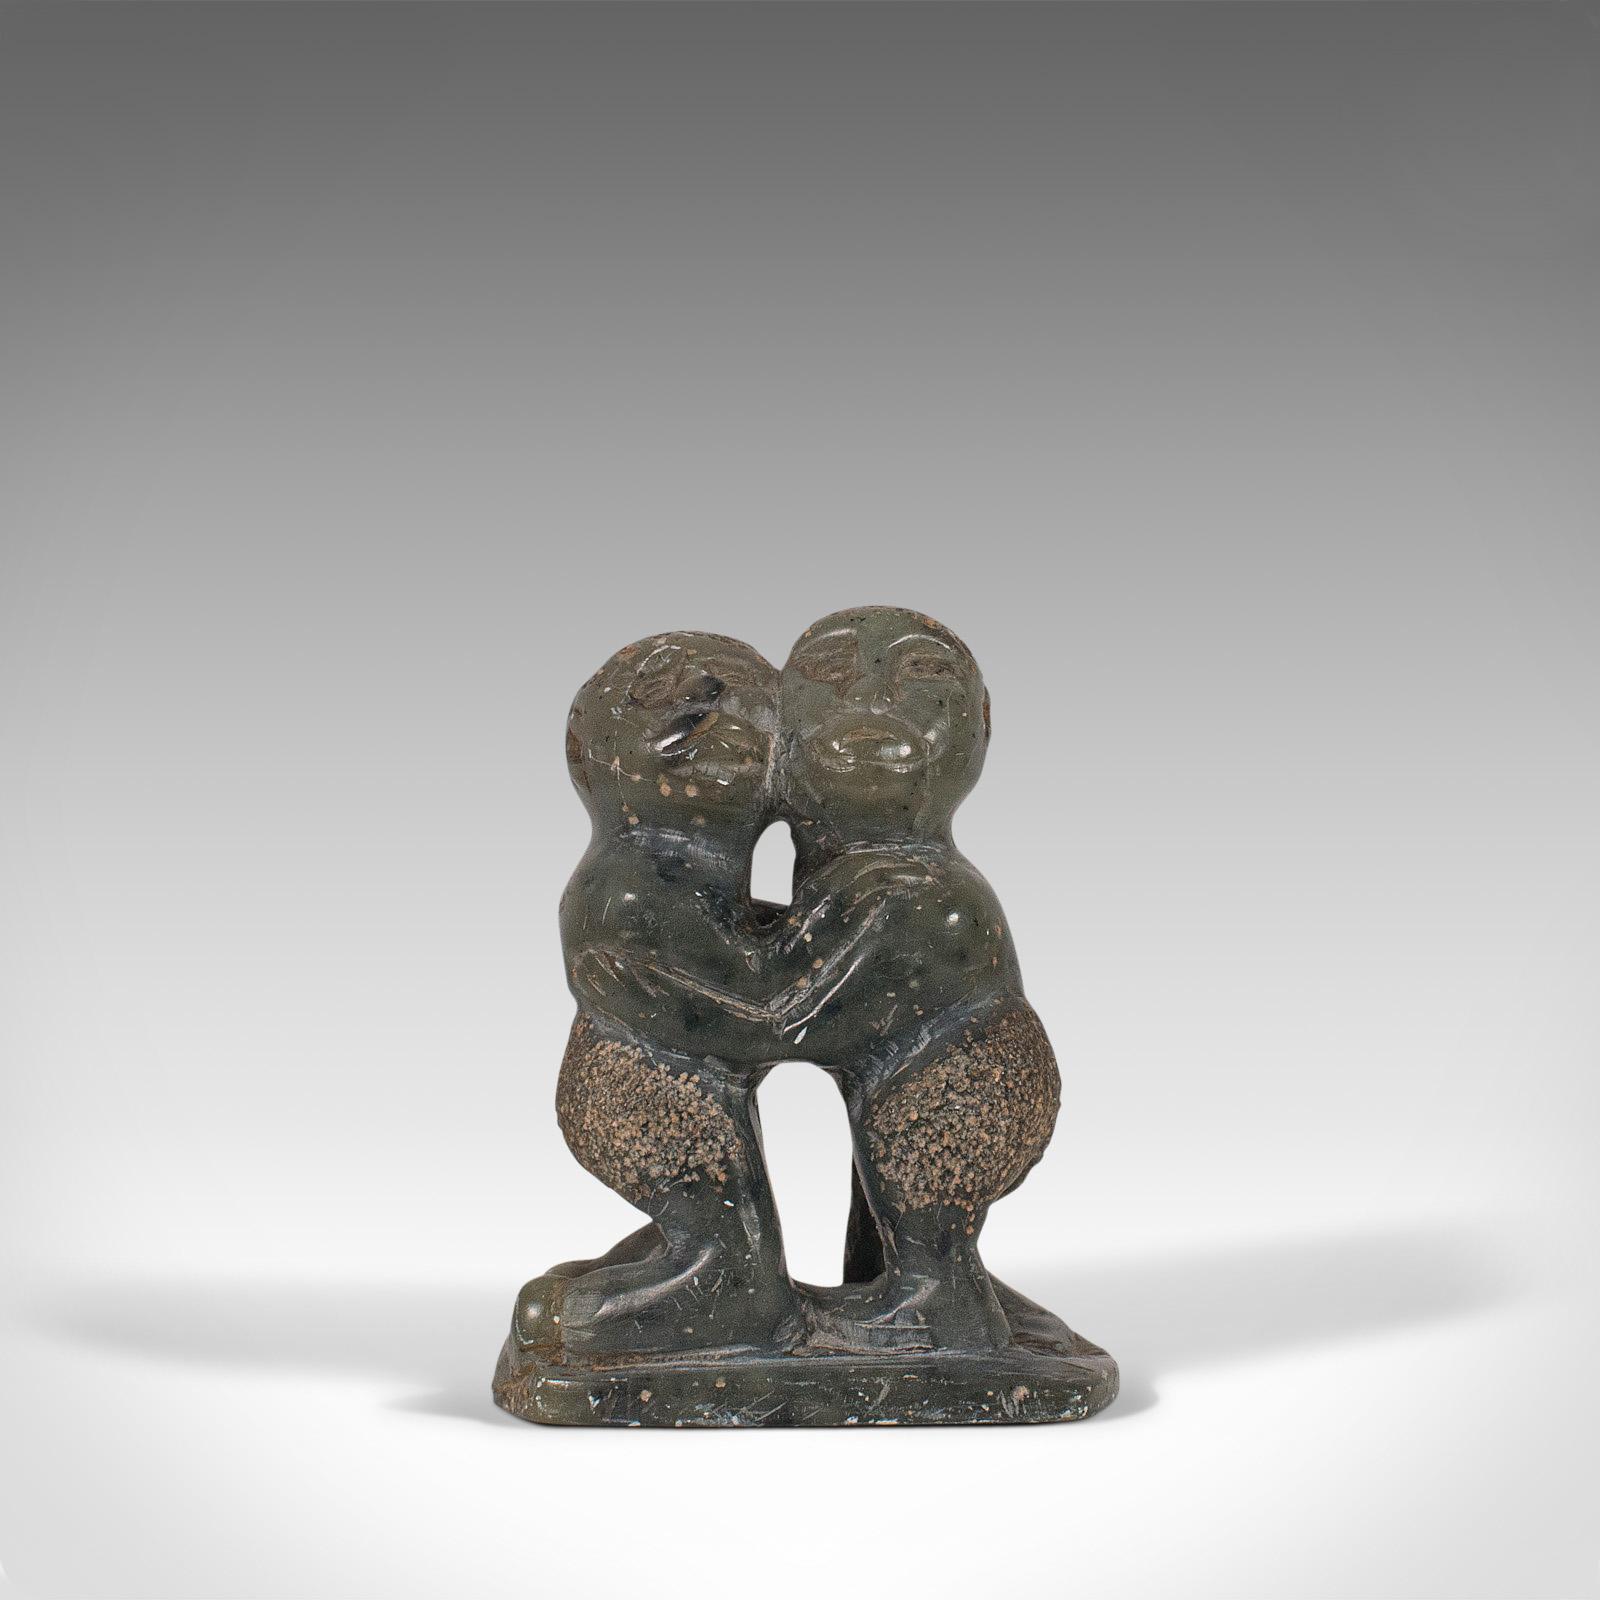 Il s'agit d'une petite figurine tribale ancienne. Statue polynésienne décorative en stéatite représentant deux garçons enlacés, datant de la fin du XIXe siècle, vers 1900.

Un attrait naïf pour cette petite pièce fascinante
Présente une patine